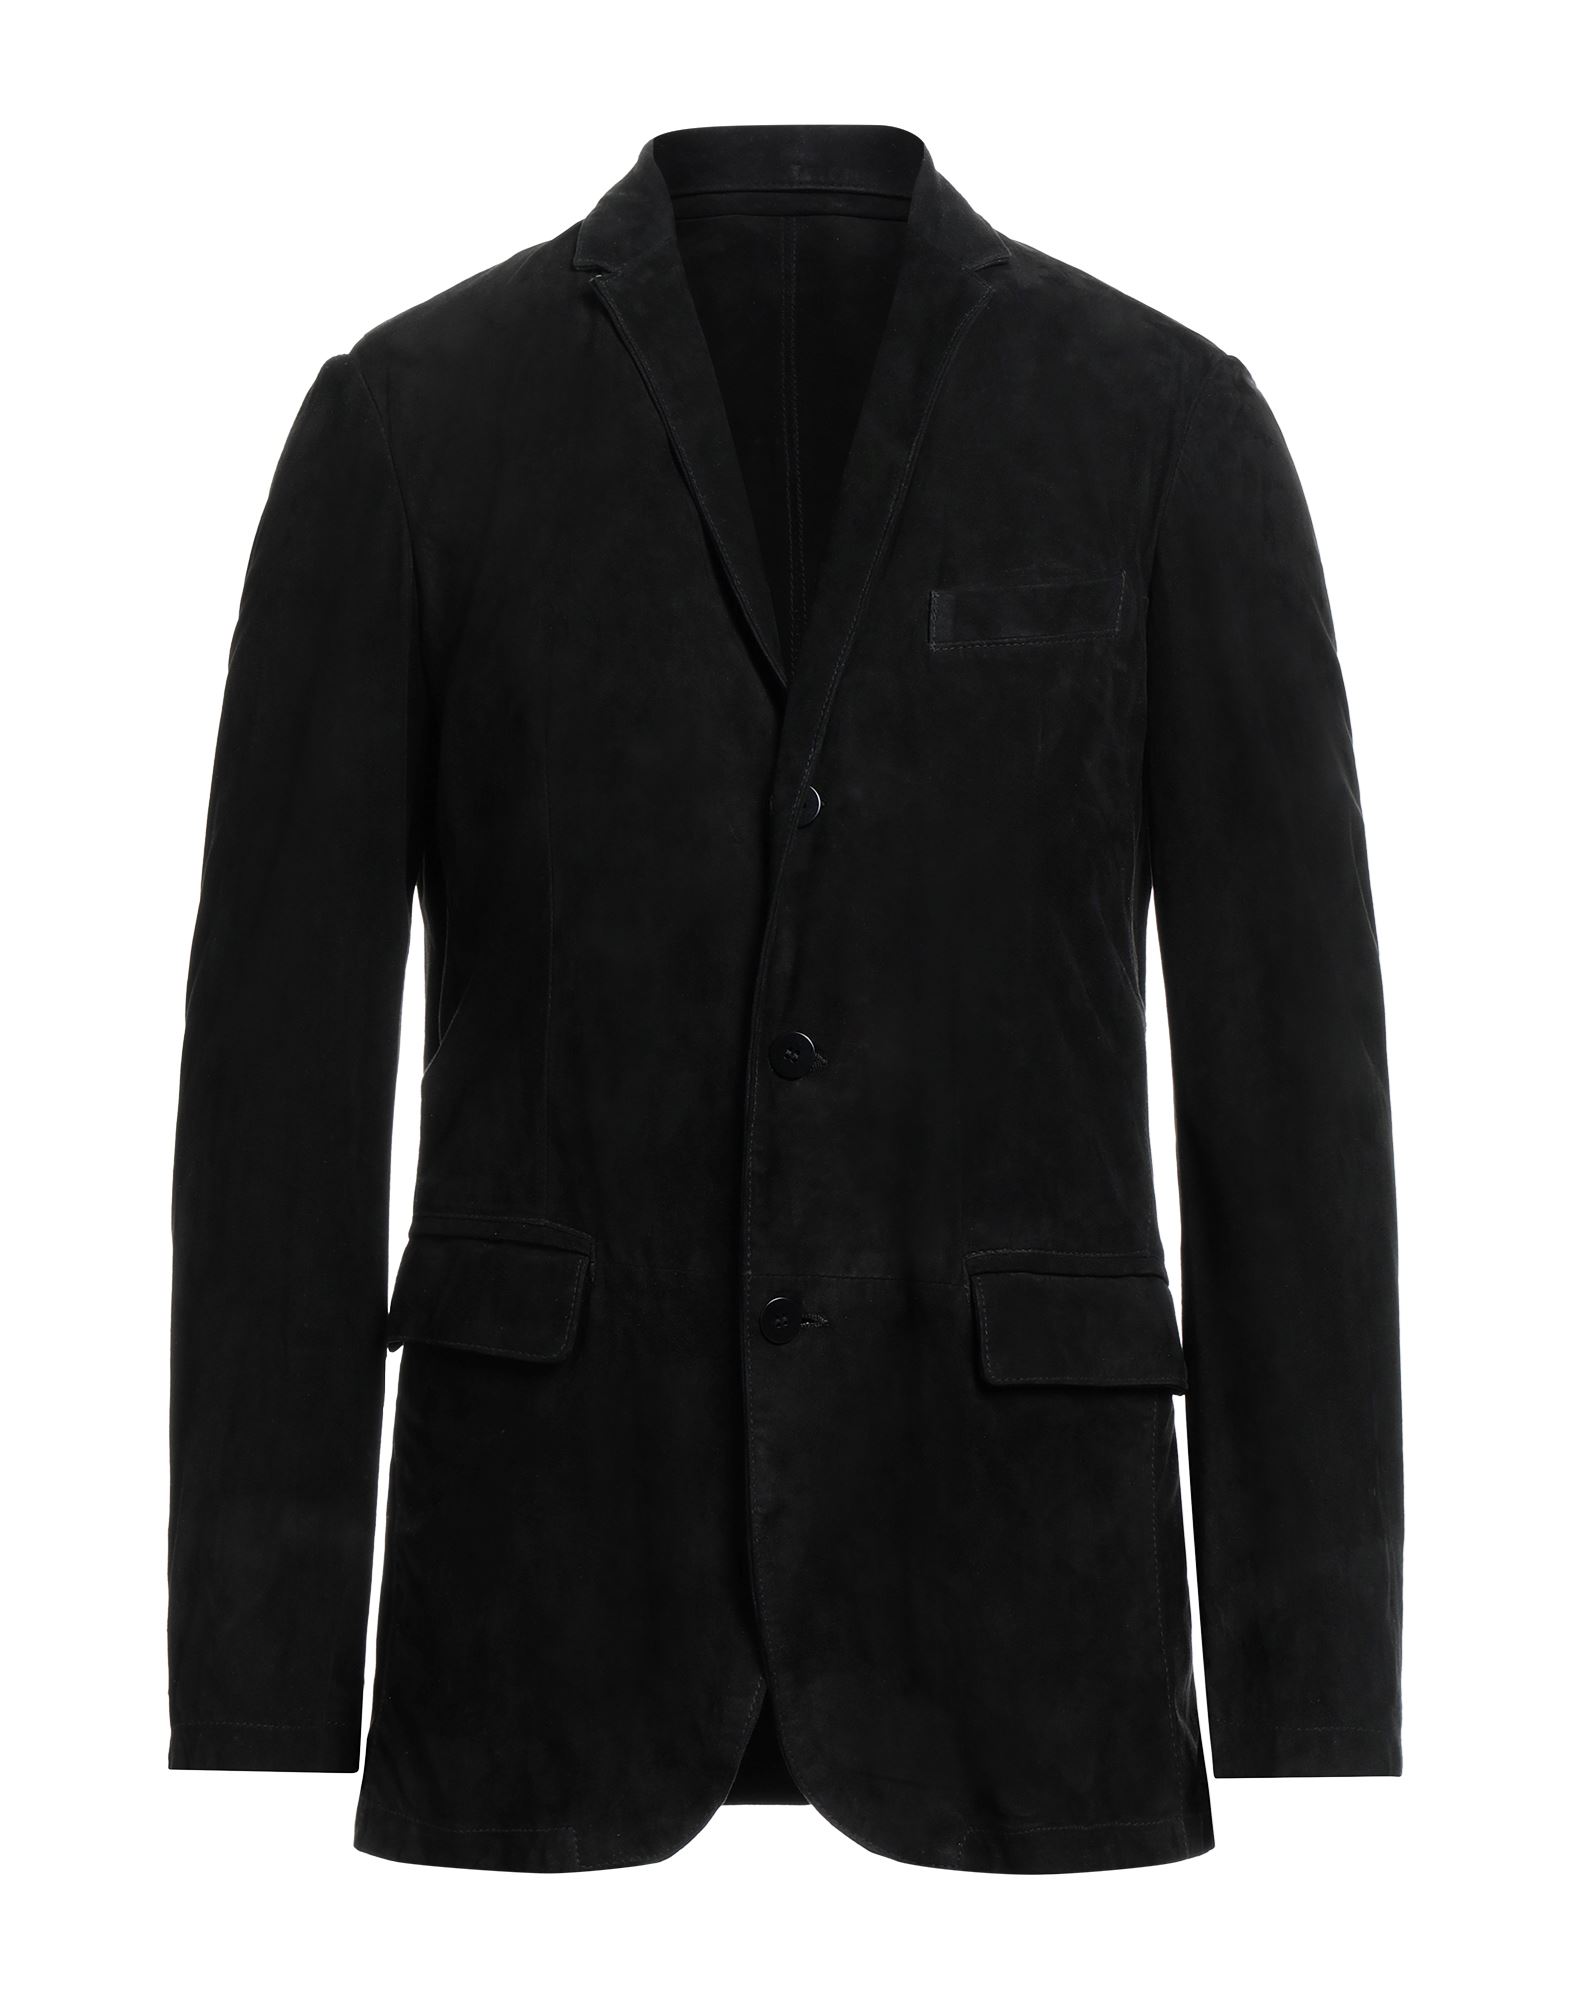 Andrea D'amico Man Suit Jacket Black Size 36 Soft Leather